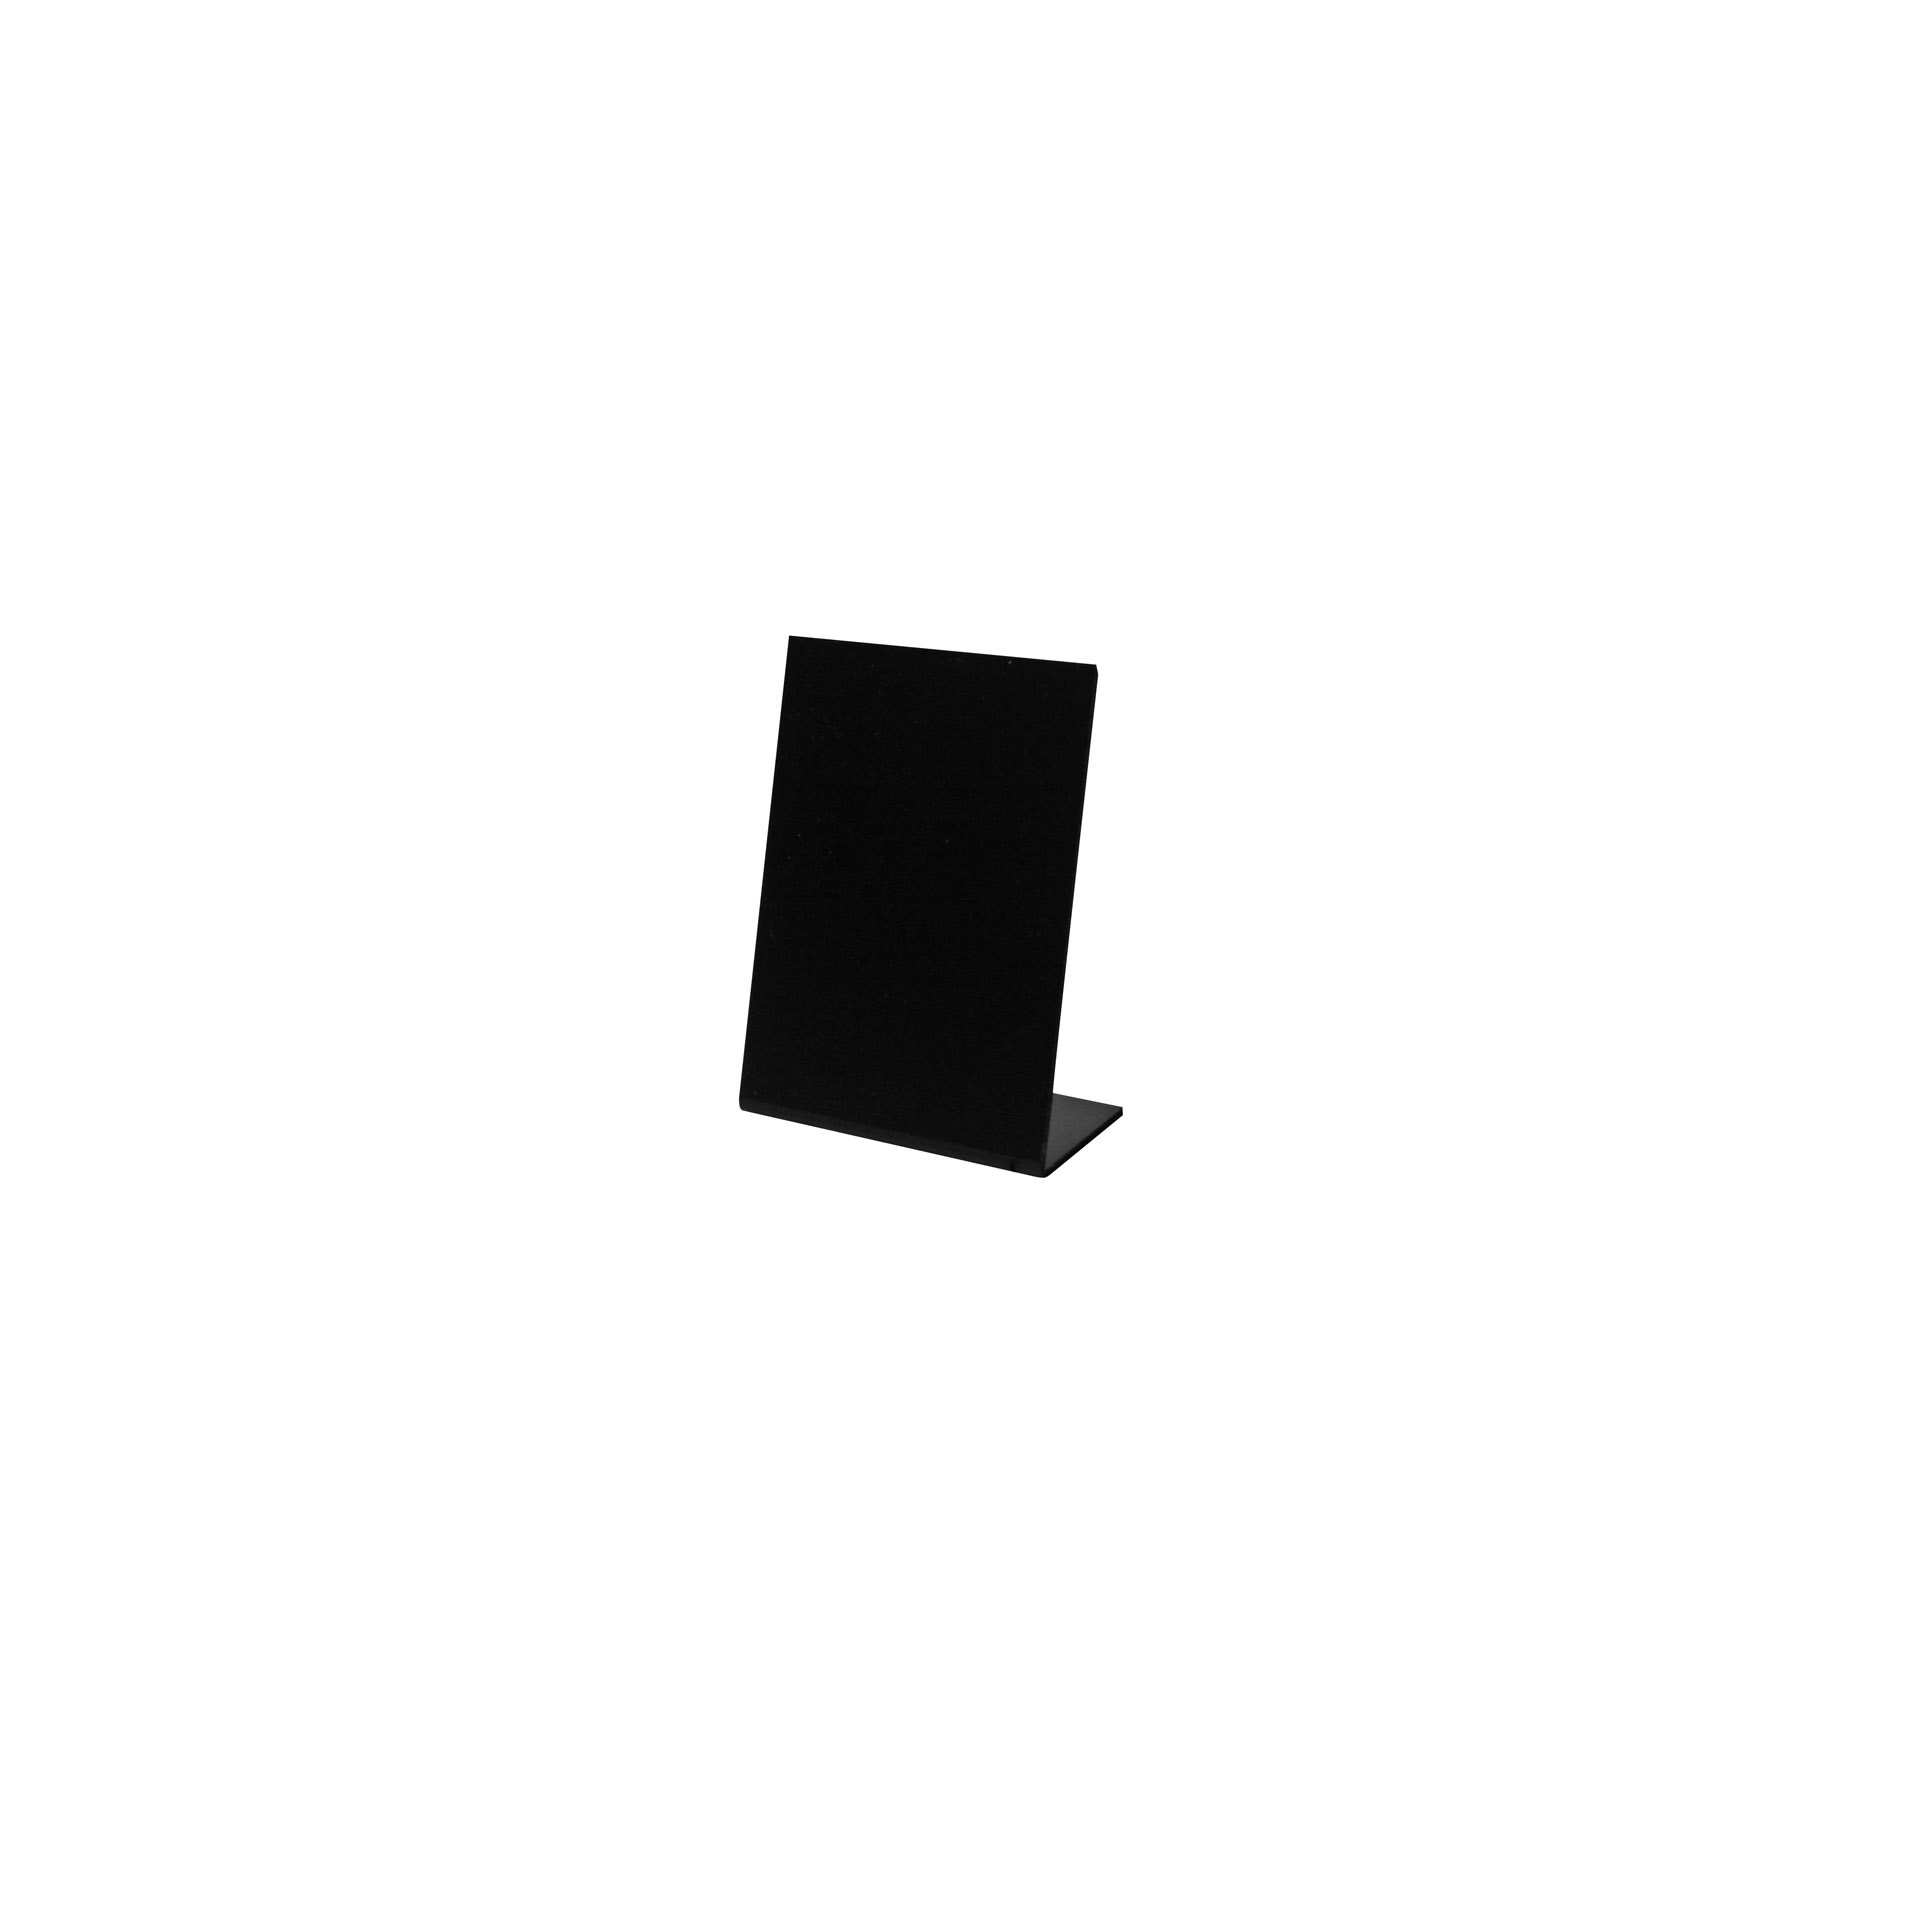 Tischaufsteller - Set à 5 Stück - schwarz - Abm. 7,0 x 10,5 x 16,5 cm - PVC - 198950-C